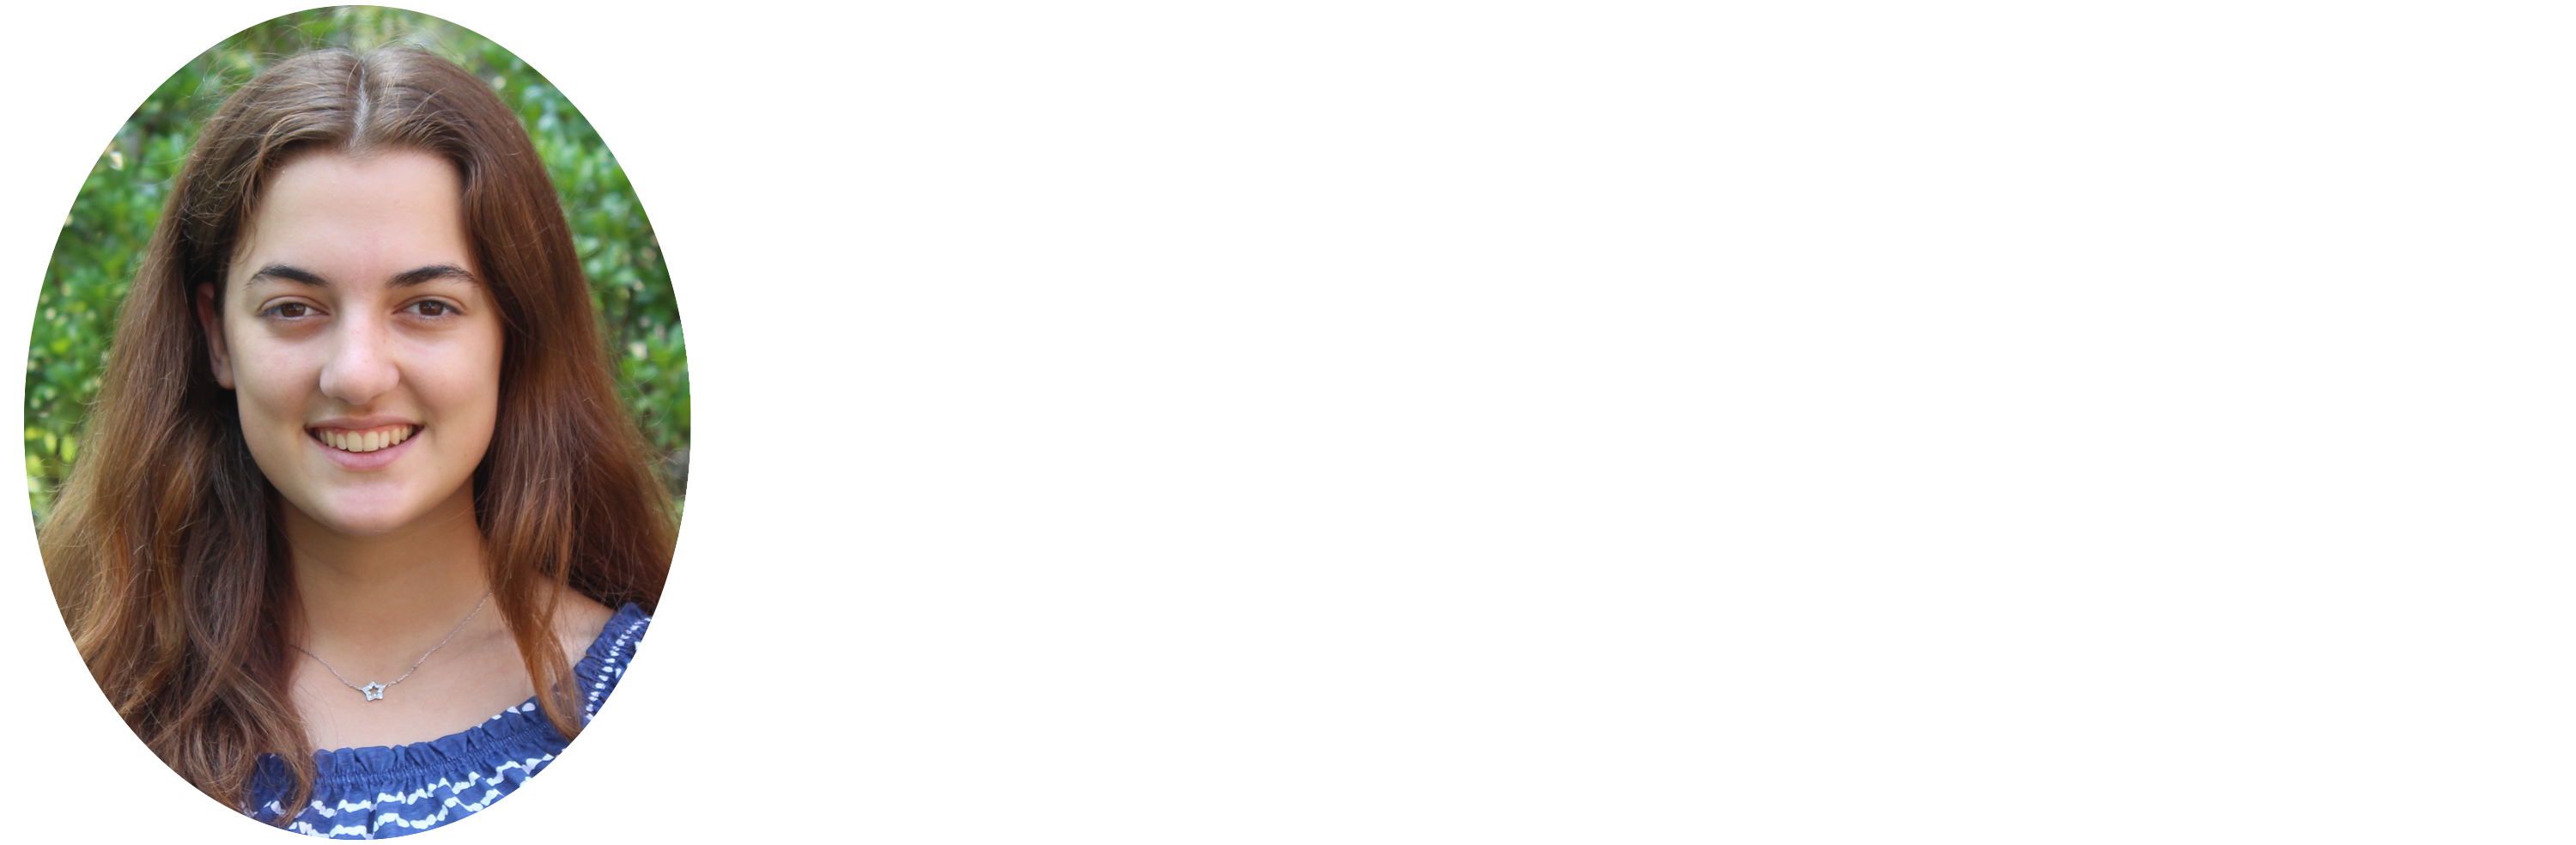 Renee Tremblay quote